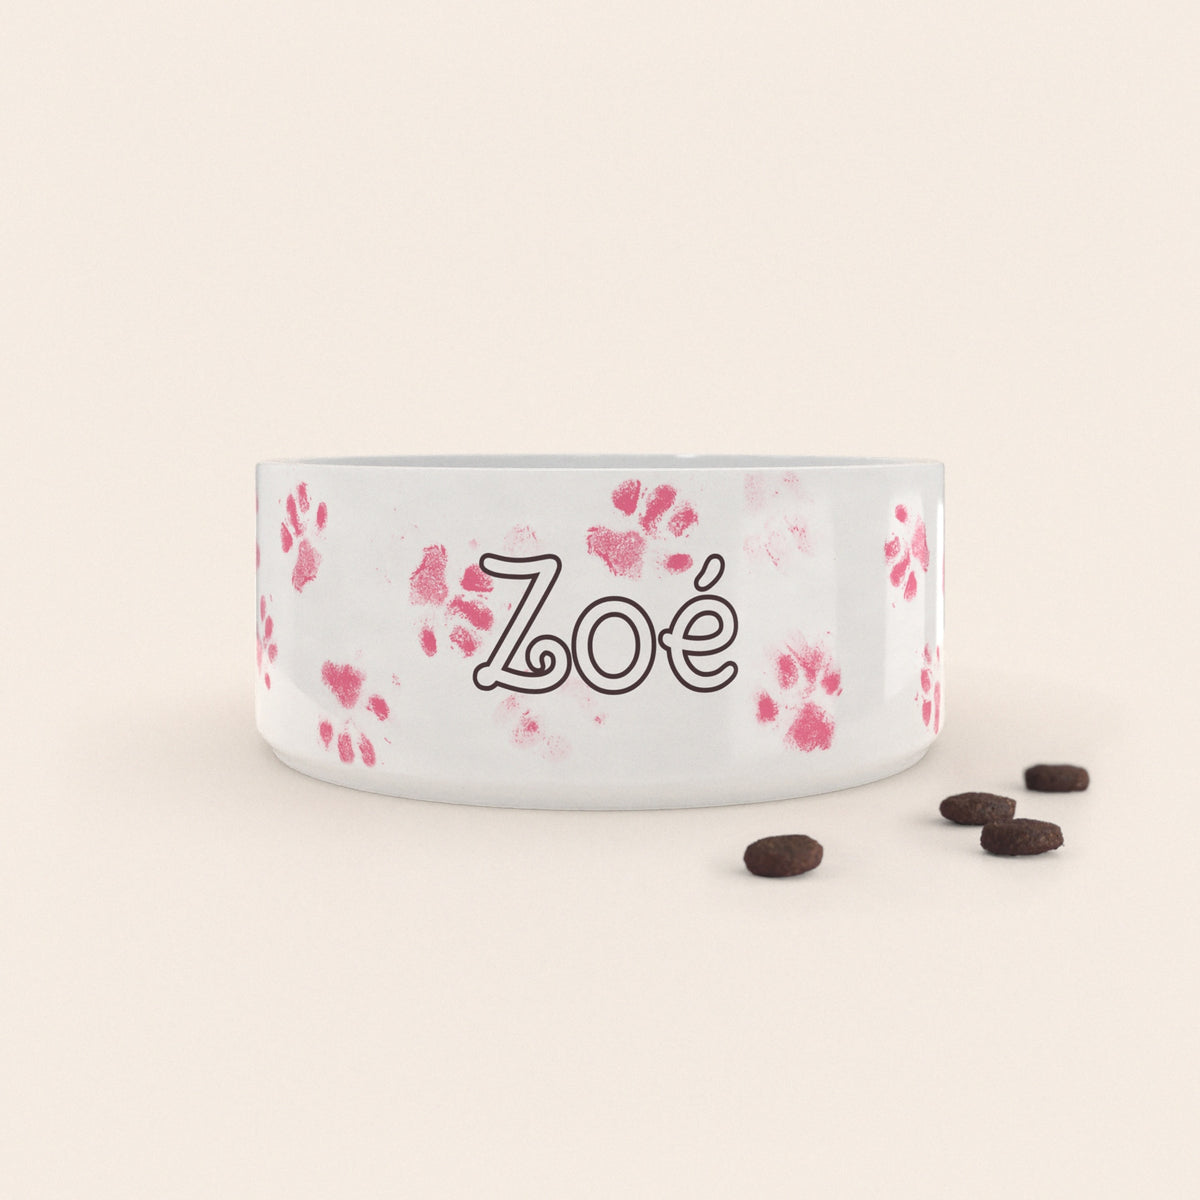 Gamelle pour chien au motif Pattes Roses personnalisés avec le nom Zoé, accompagné de croquettes sur fond neutre.